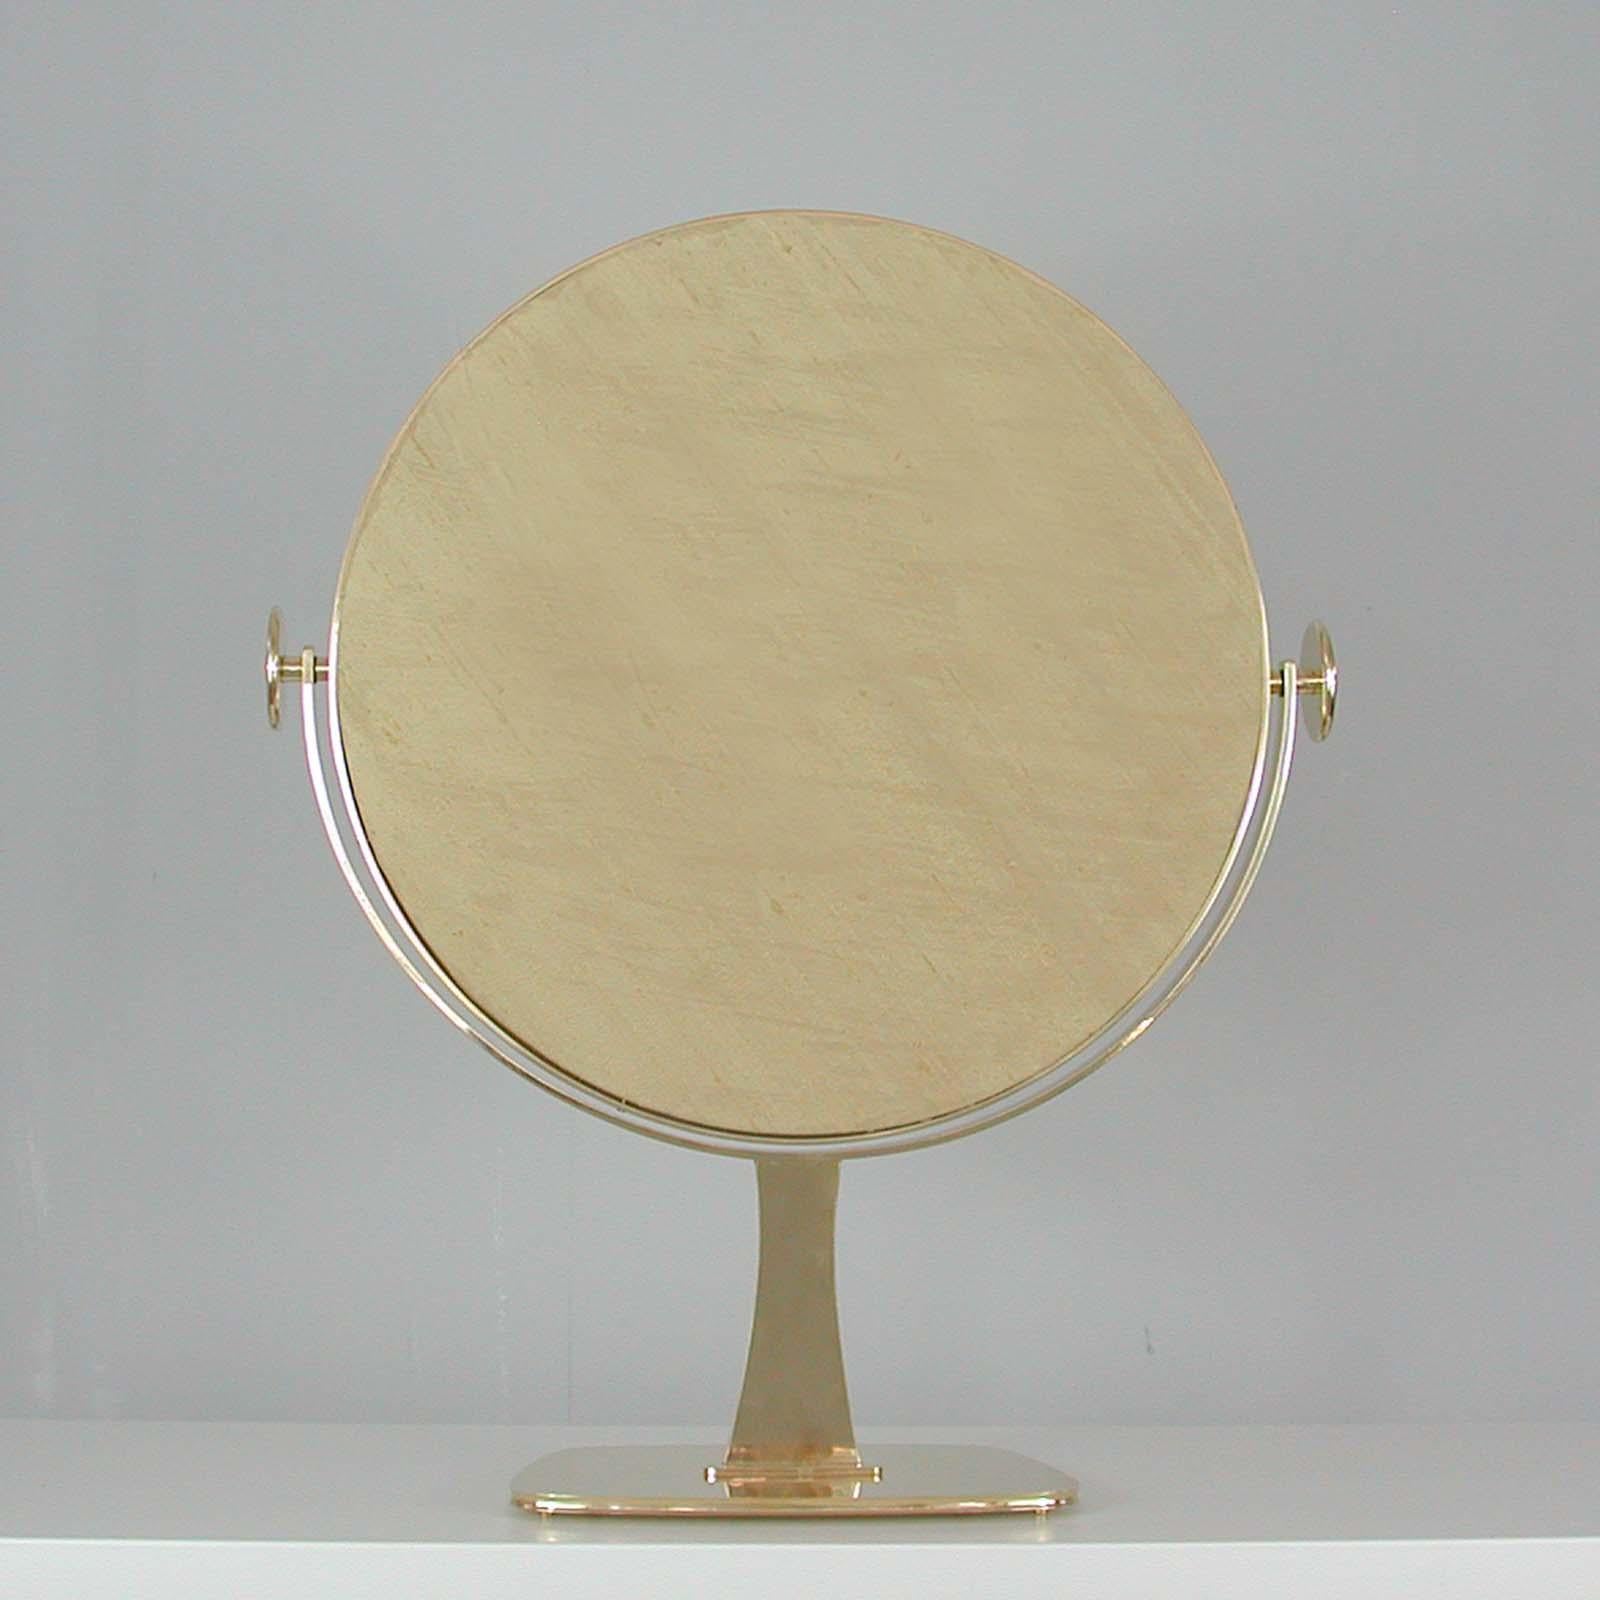 Midcentury German Brass Table Mirror by Vereinigte Werkstätten München, 1960s For Sale 1